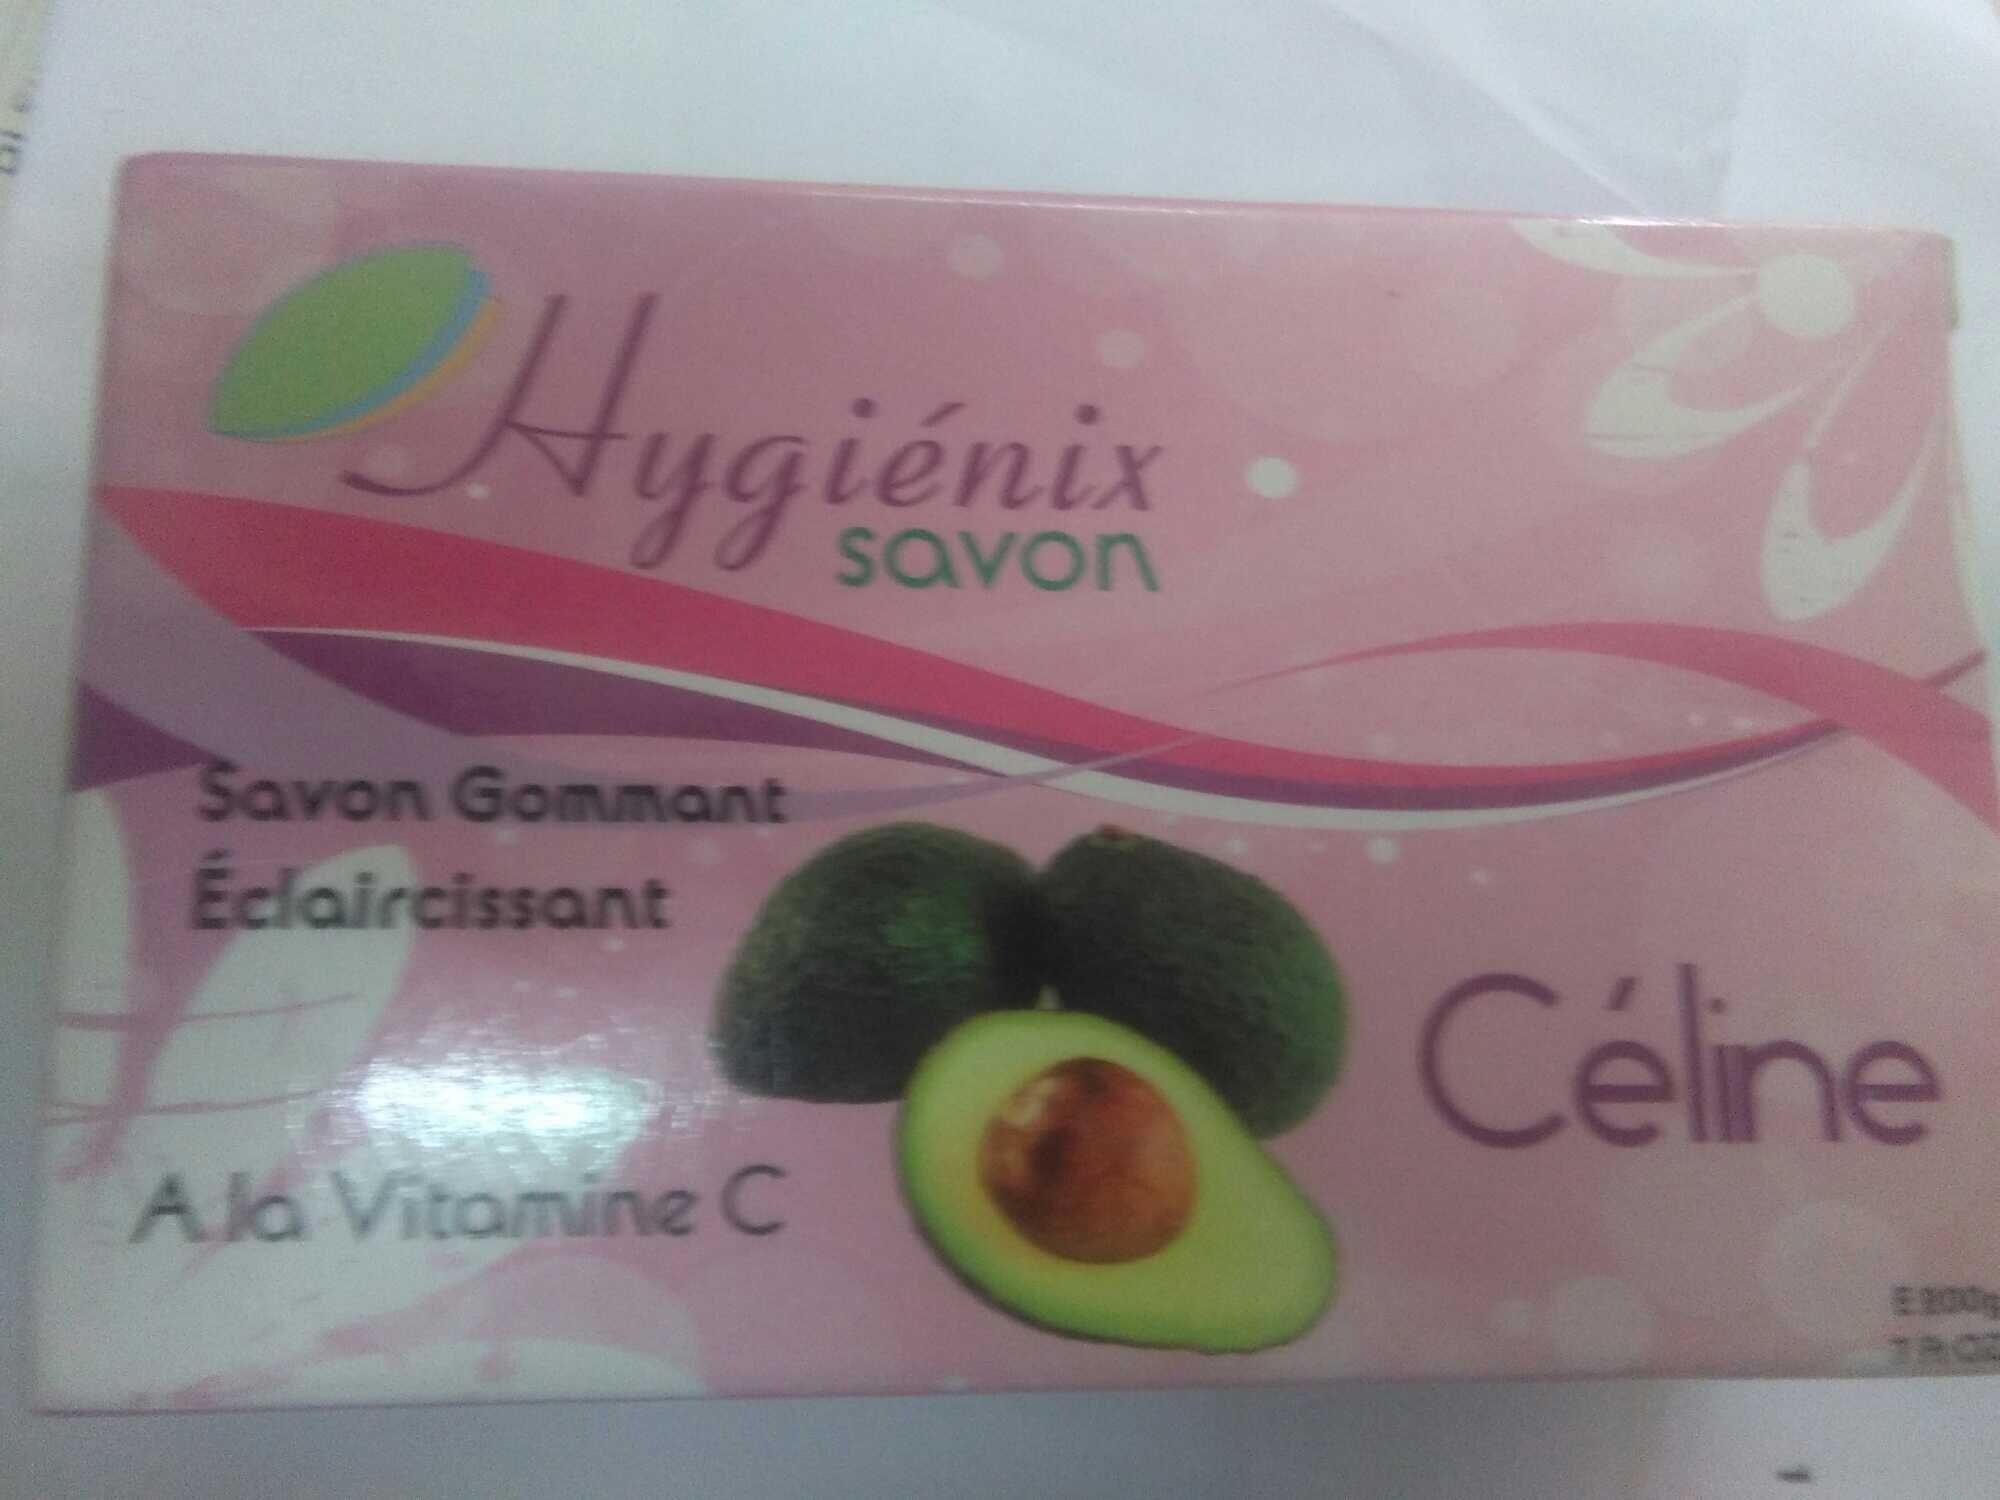 hygiénix savon - Продукт - fr